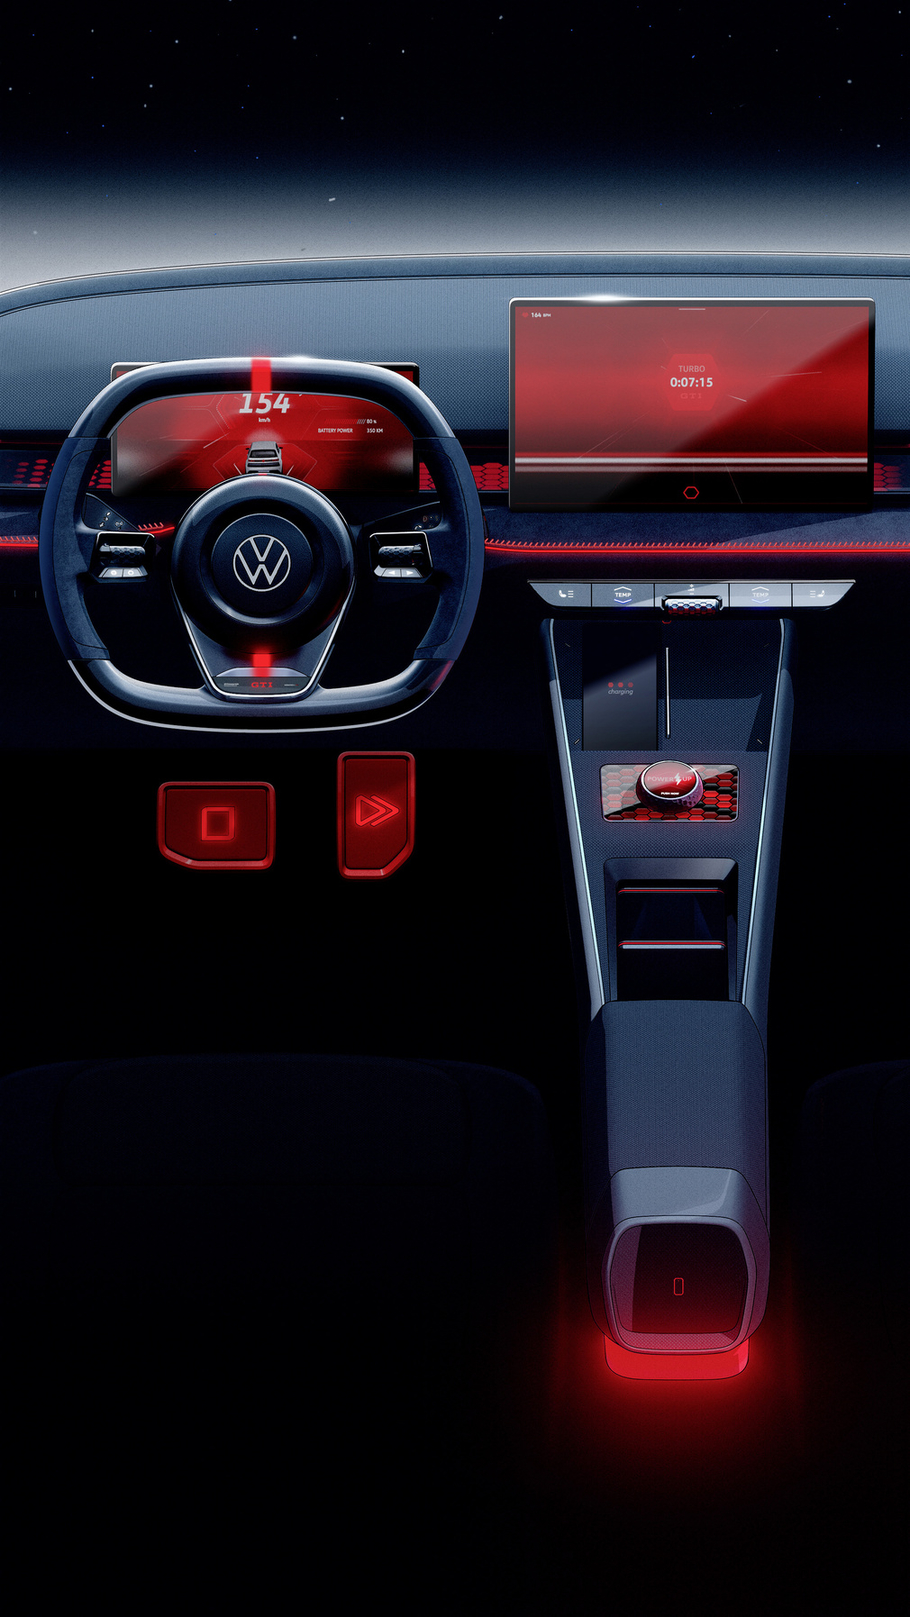 Новый хот хэтч Volkswagen имитация рева мотора и фальшивое переключение передач